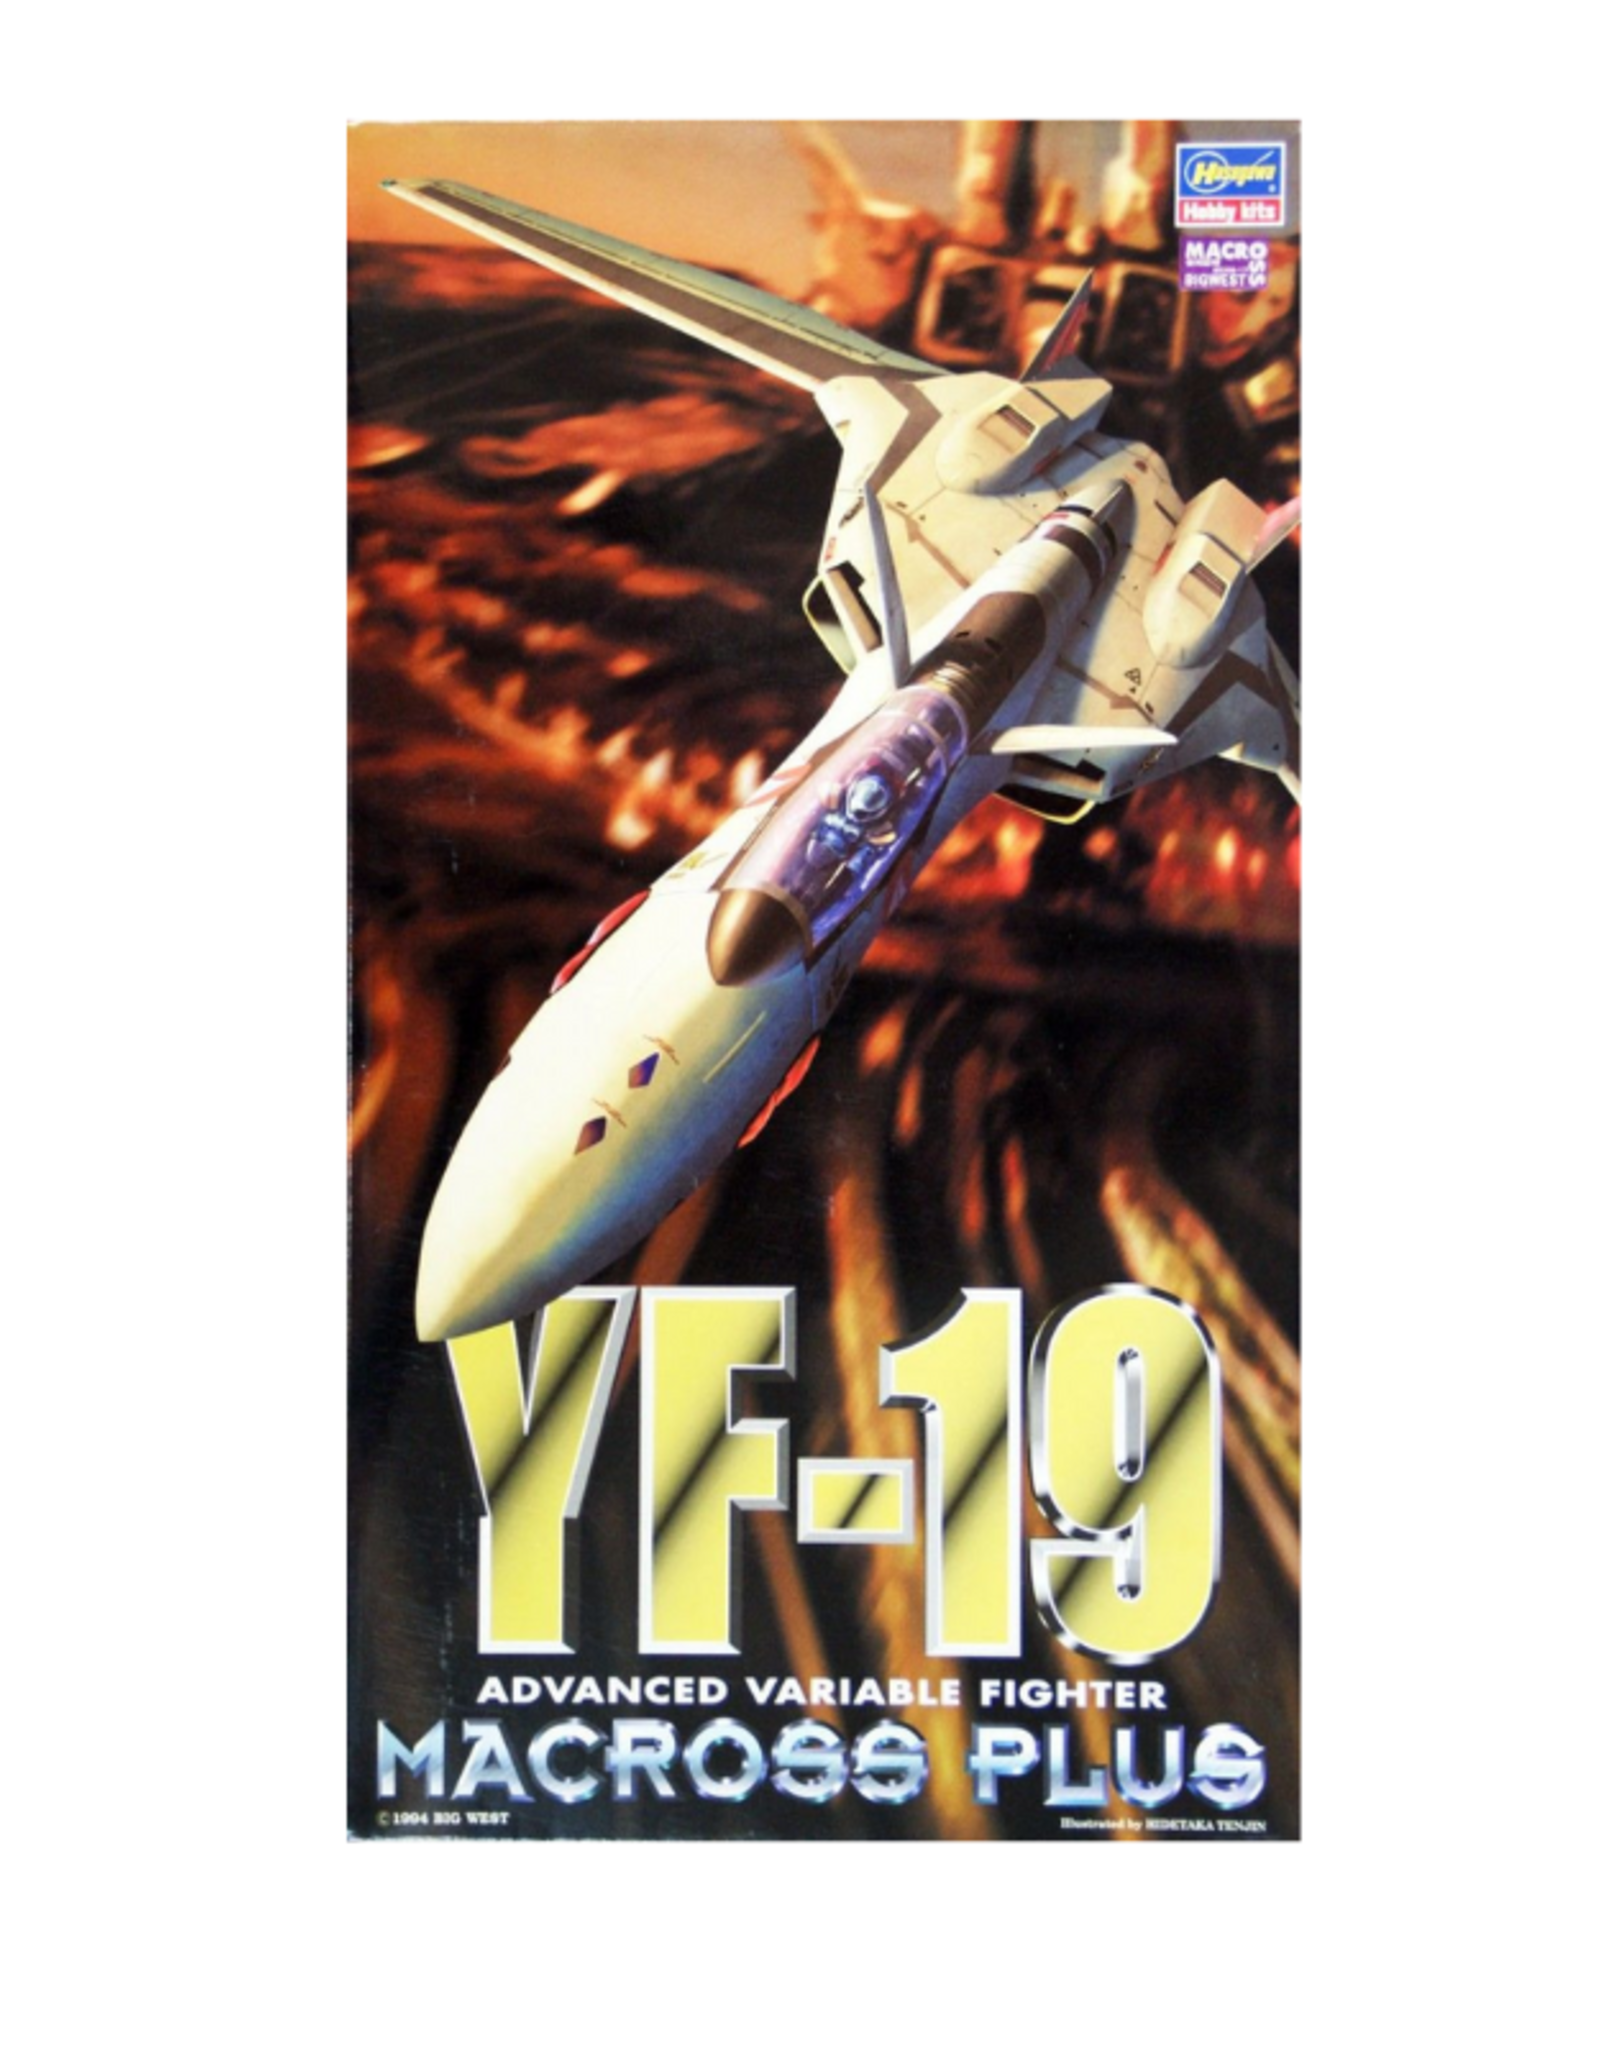 Macross Plus YF-19 Advanced Variable Fighter